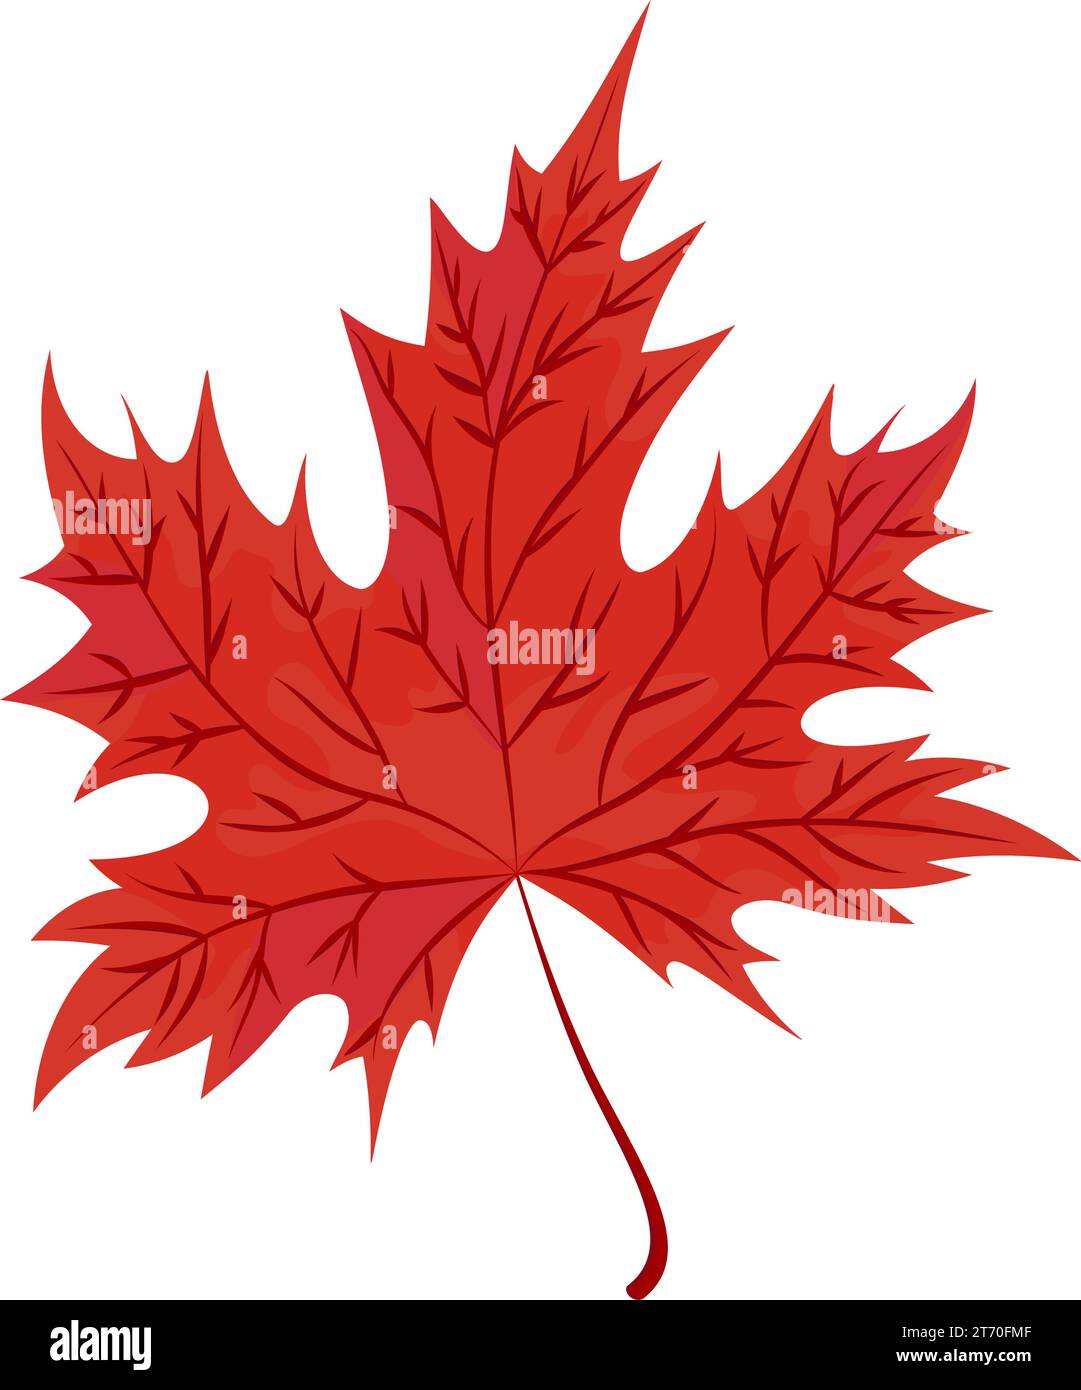 Foglia d'acero rossa autunnale. Simbolo isolato della foglia d'acero canadese. Stile cartoni animati. Icona della foresta botanica vettoriale. Illustrazione Vettoriale